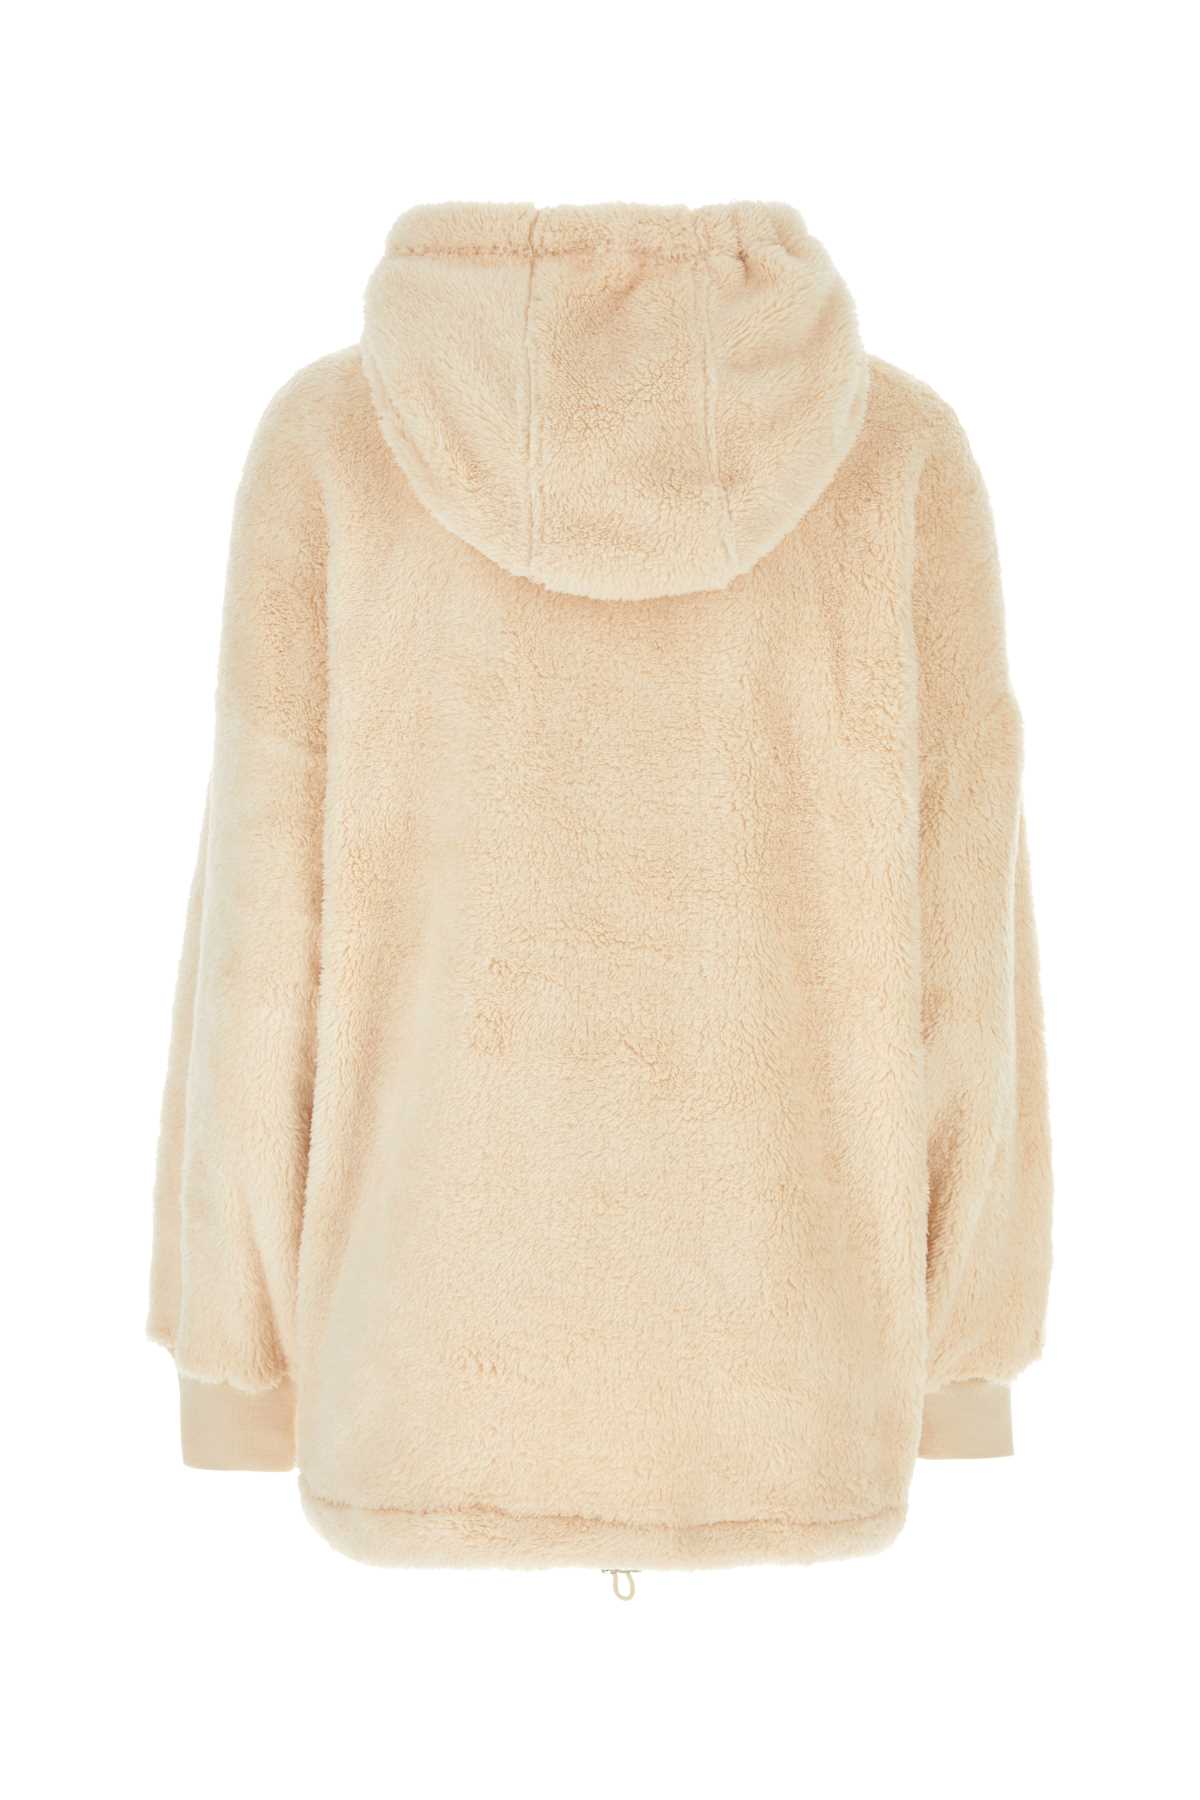 Marant Etoile Cream Eco Fur Oversize Martia Sweater In Ecru